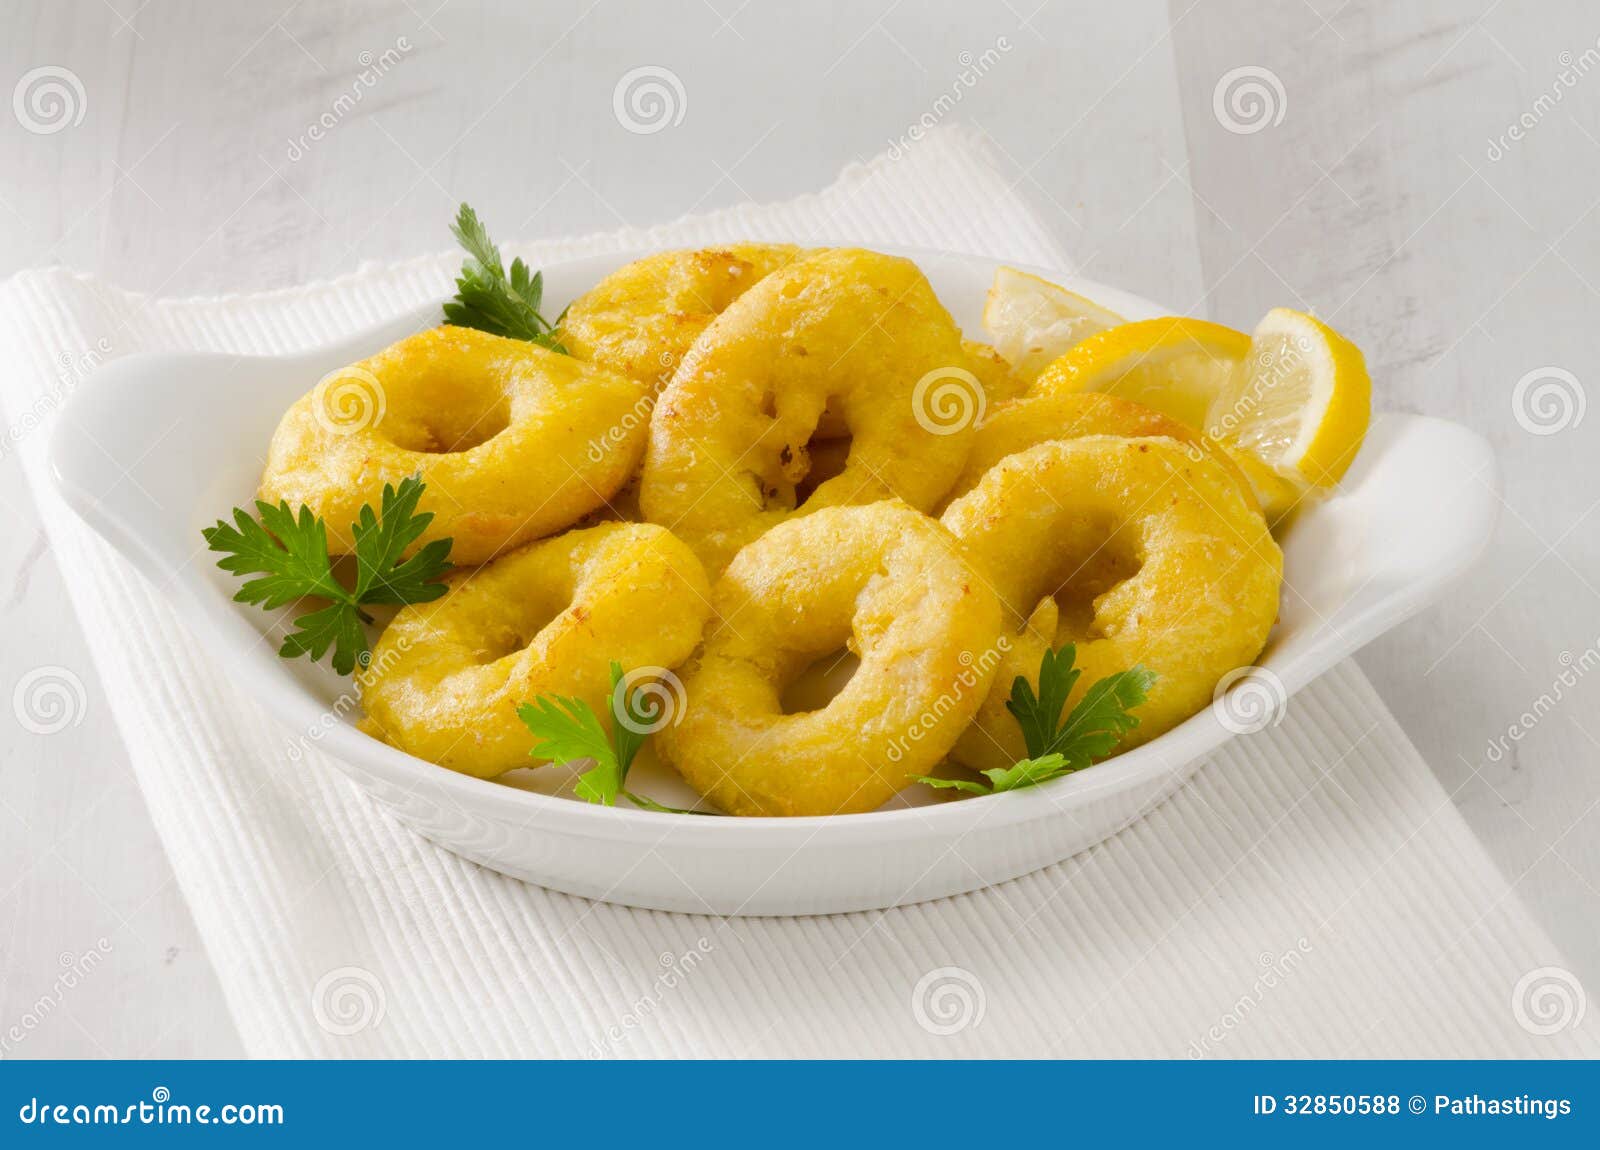 spanish cuisine. fried squid rings. calamares a la romana.